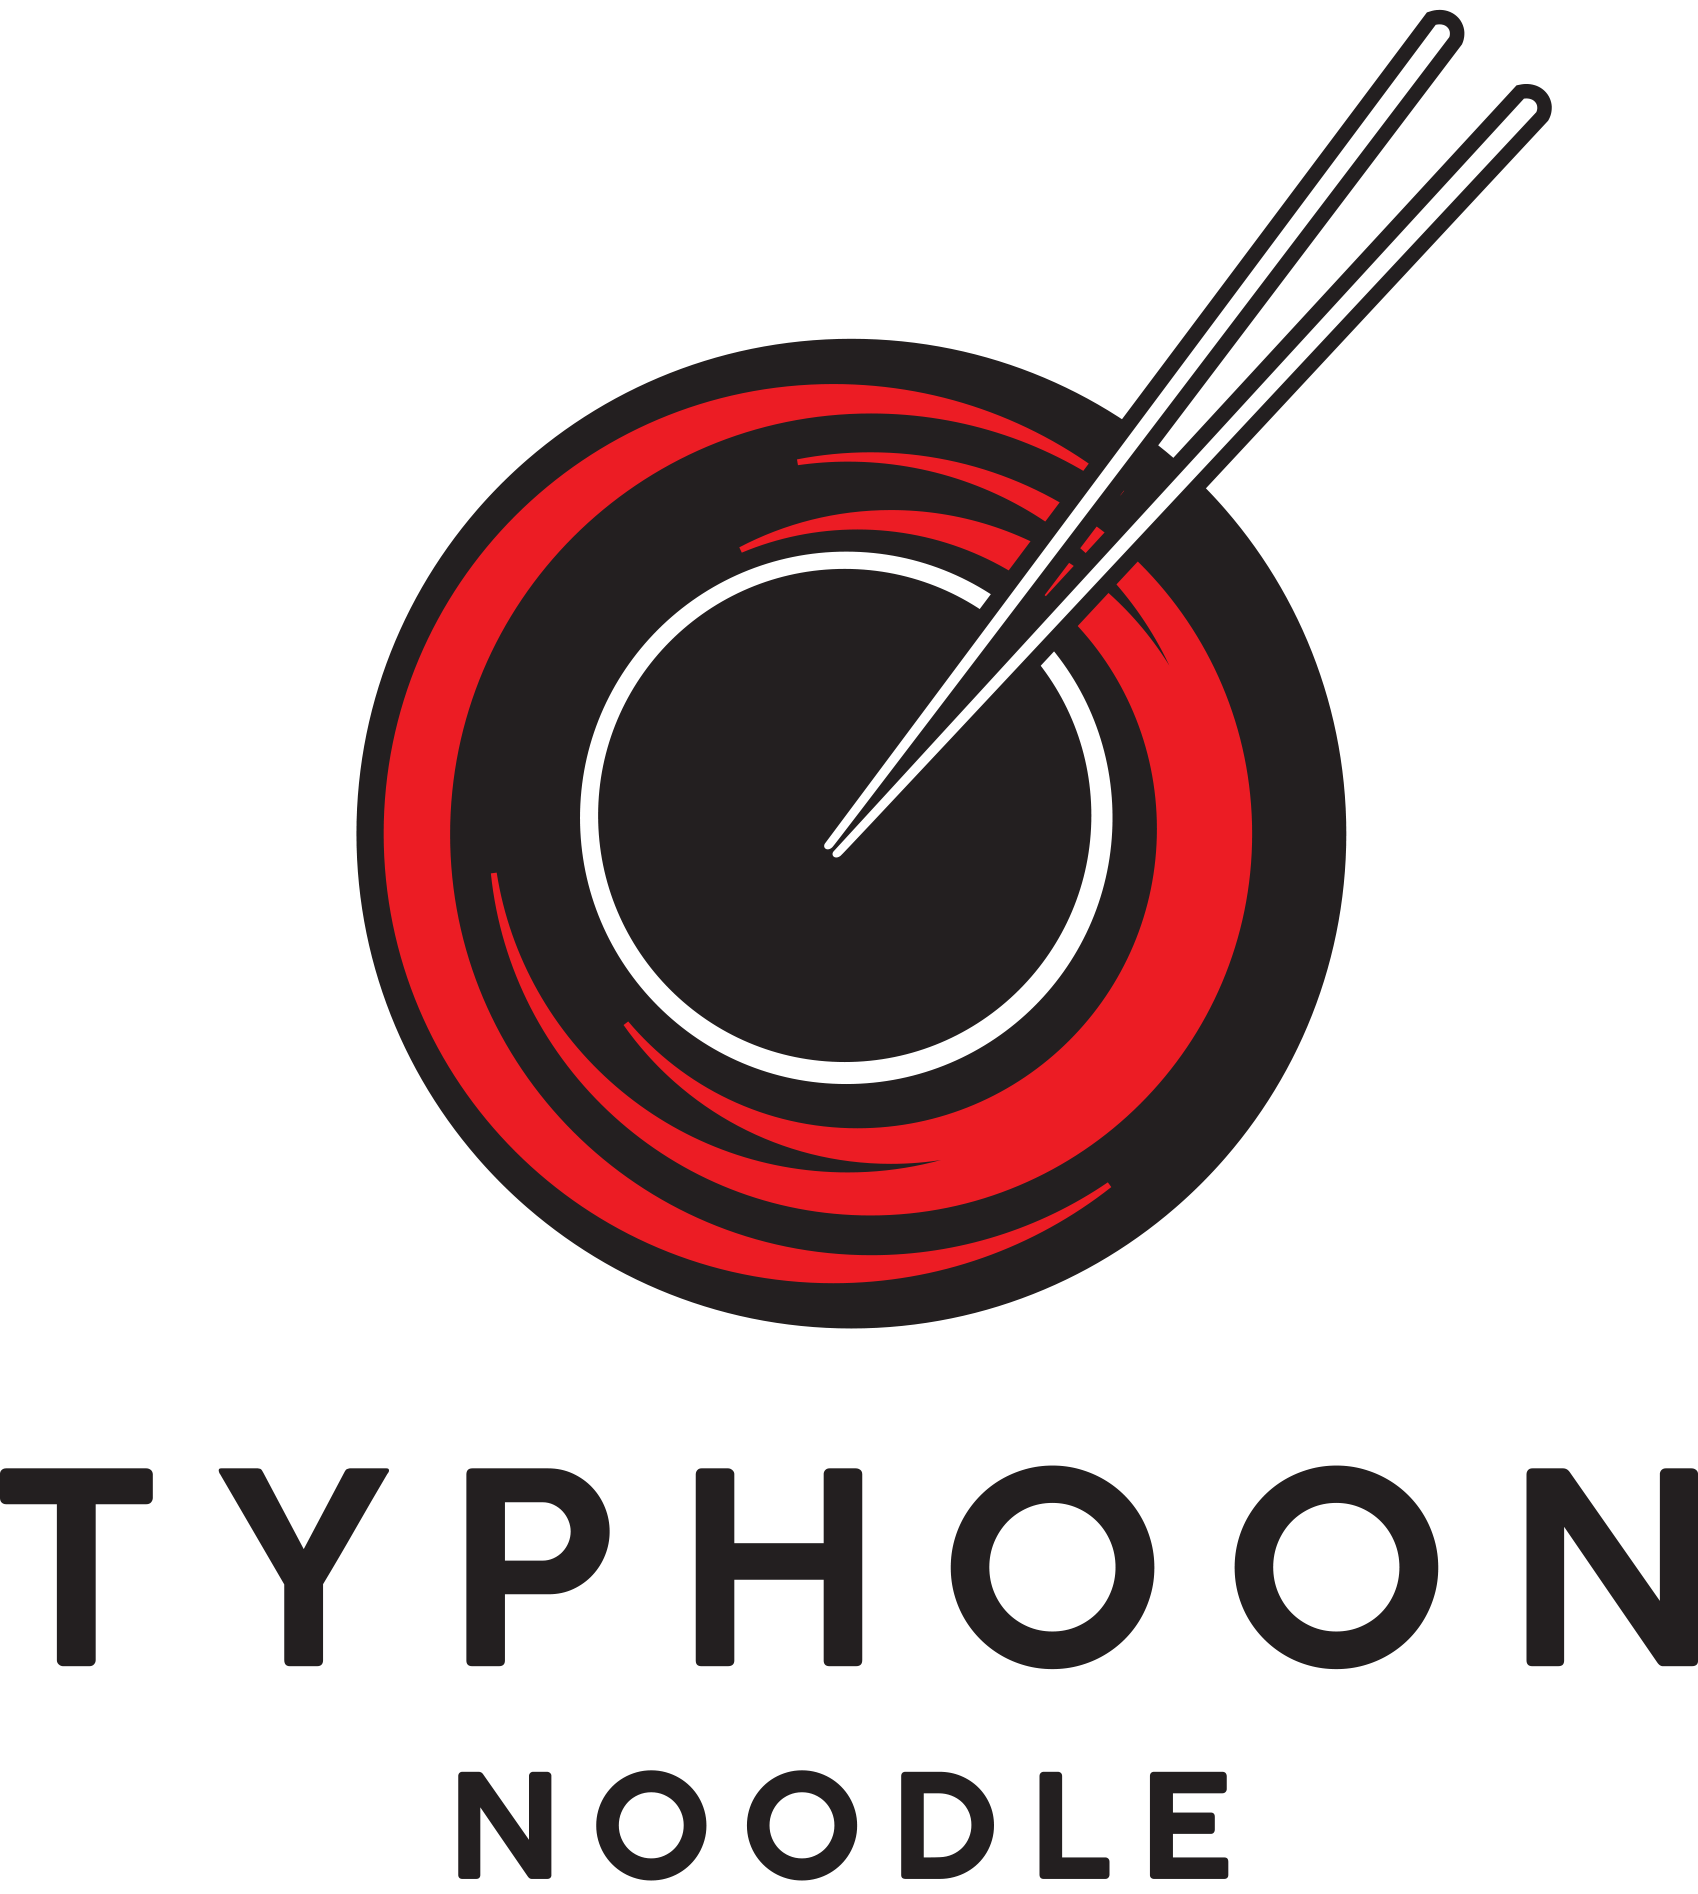 Typhoon Noodle